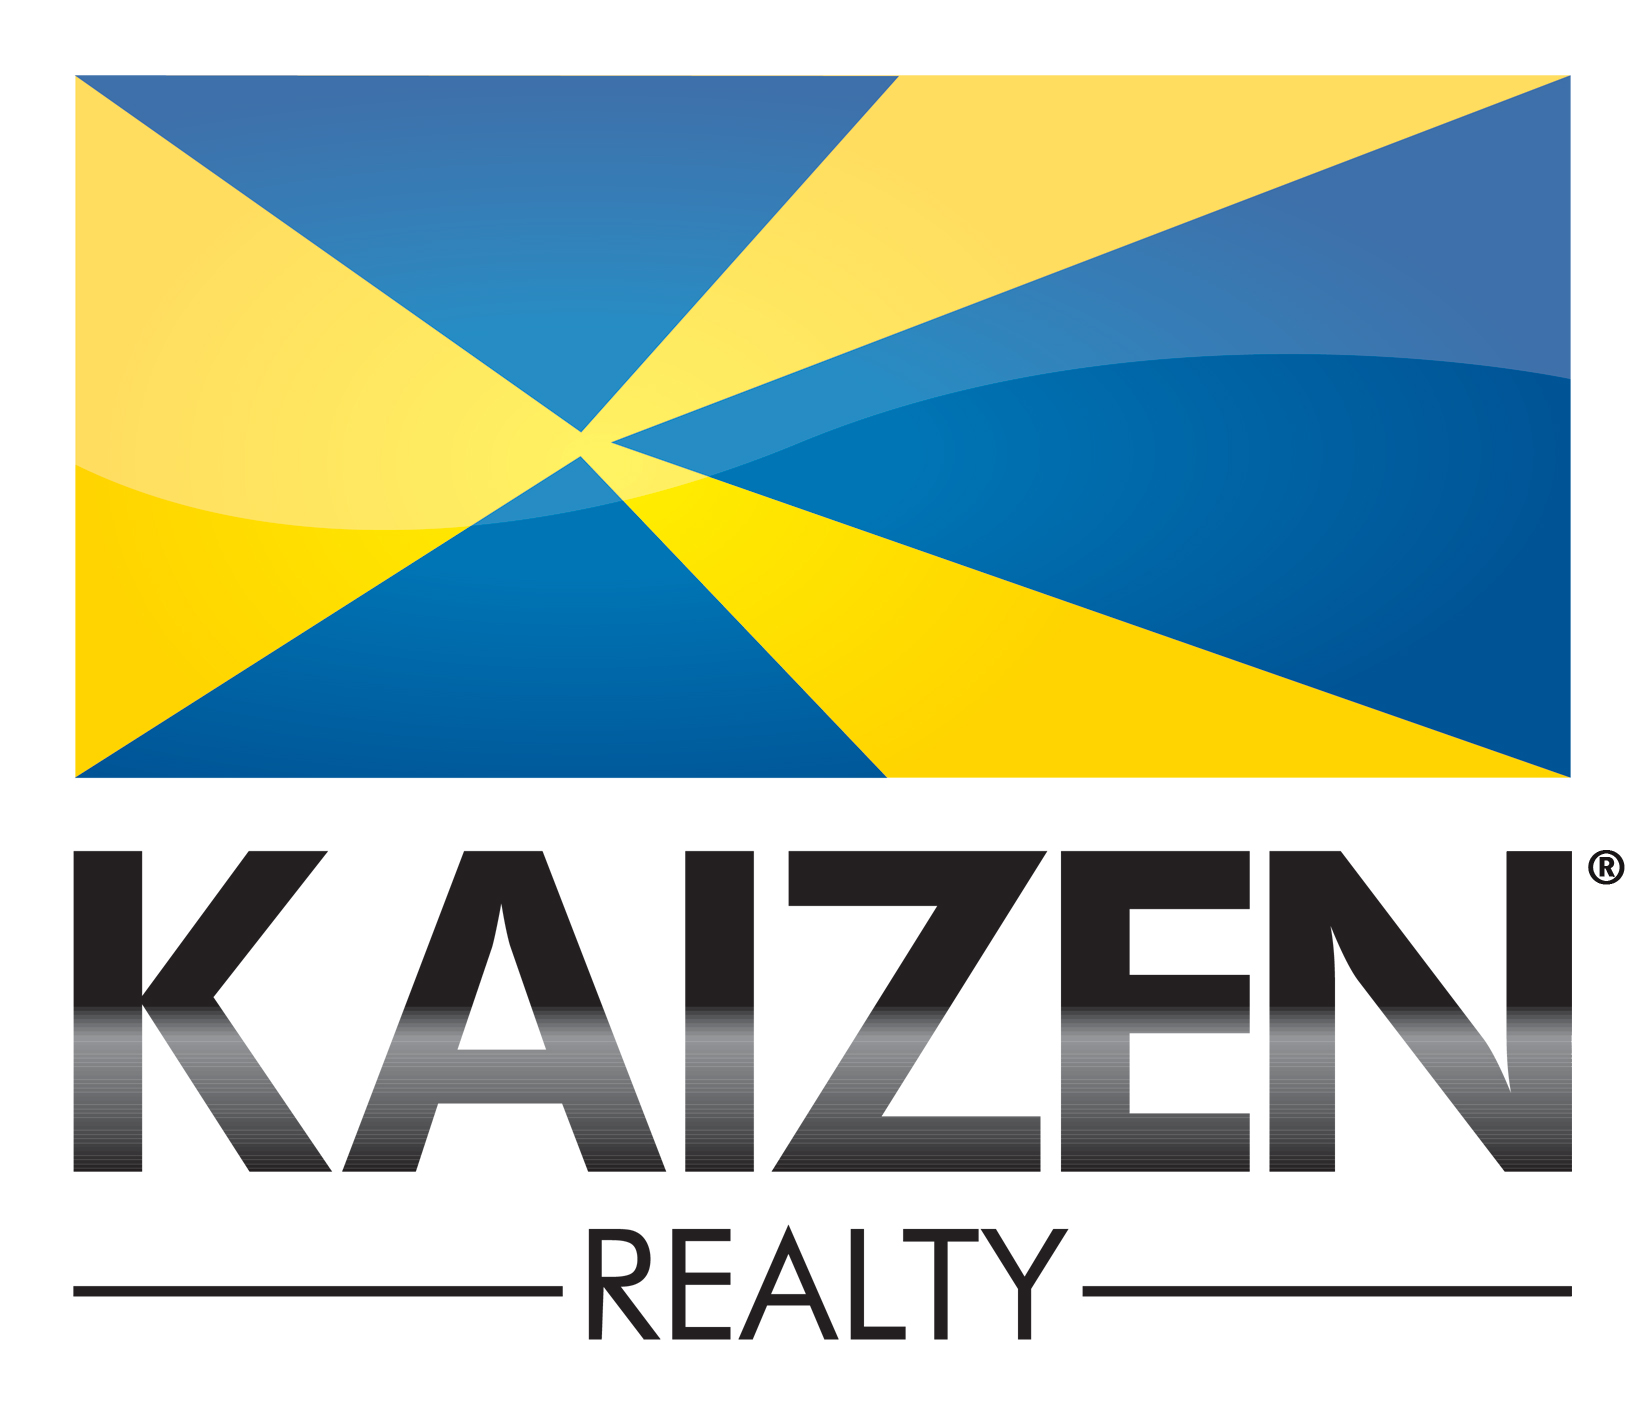 Jessica Virden - KAIZEN Realty Logo